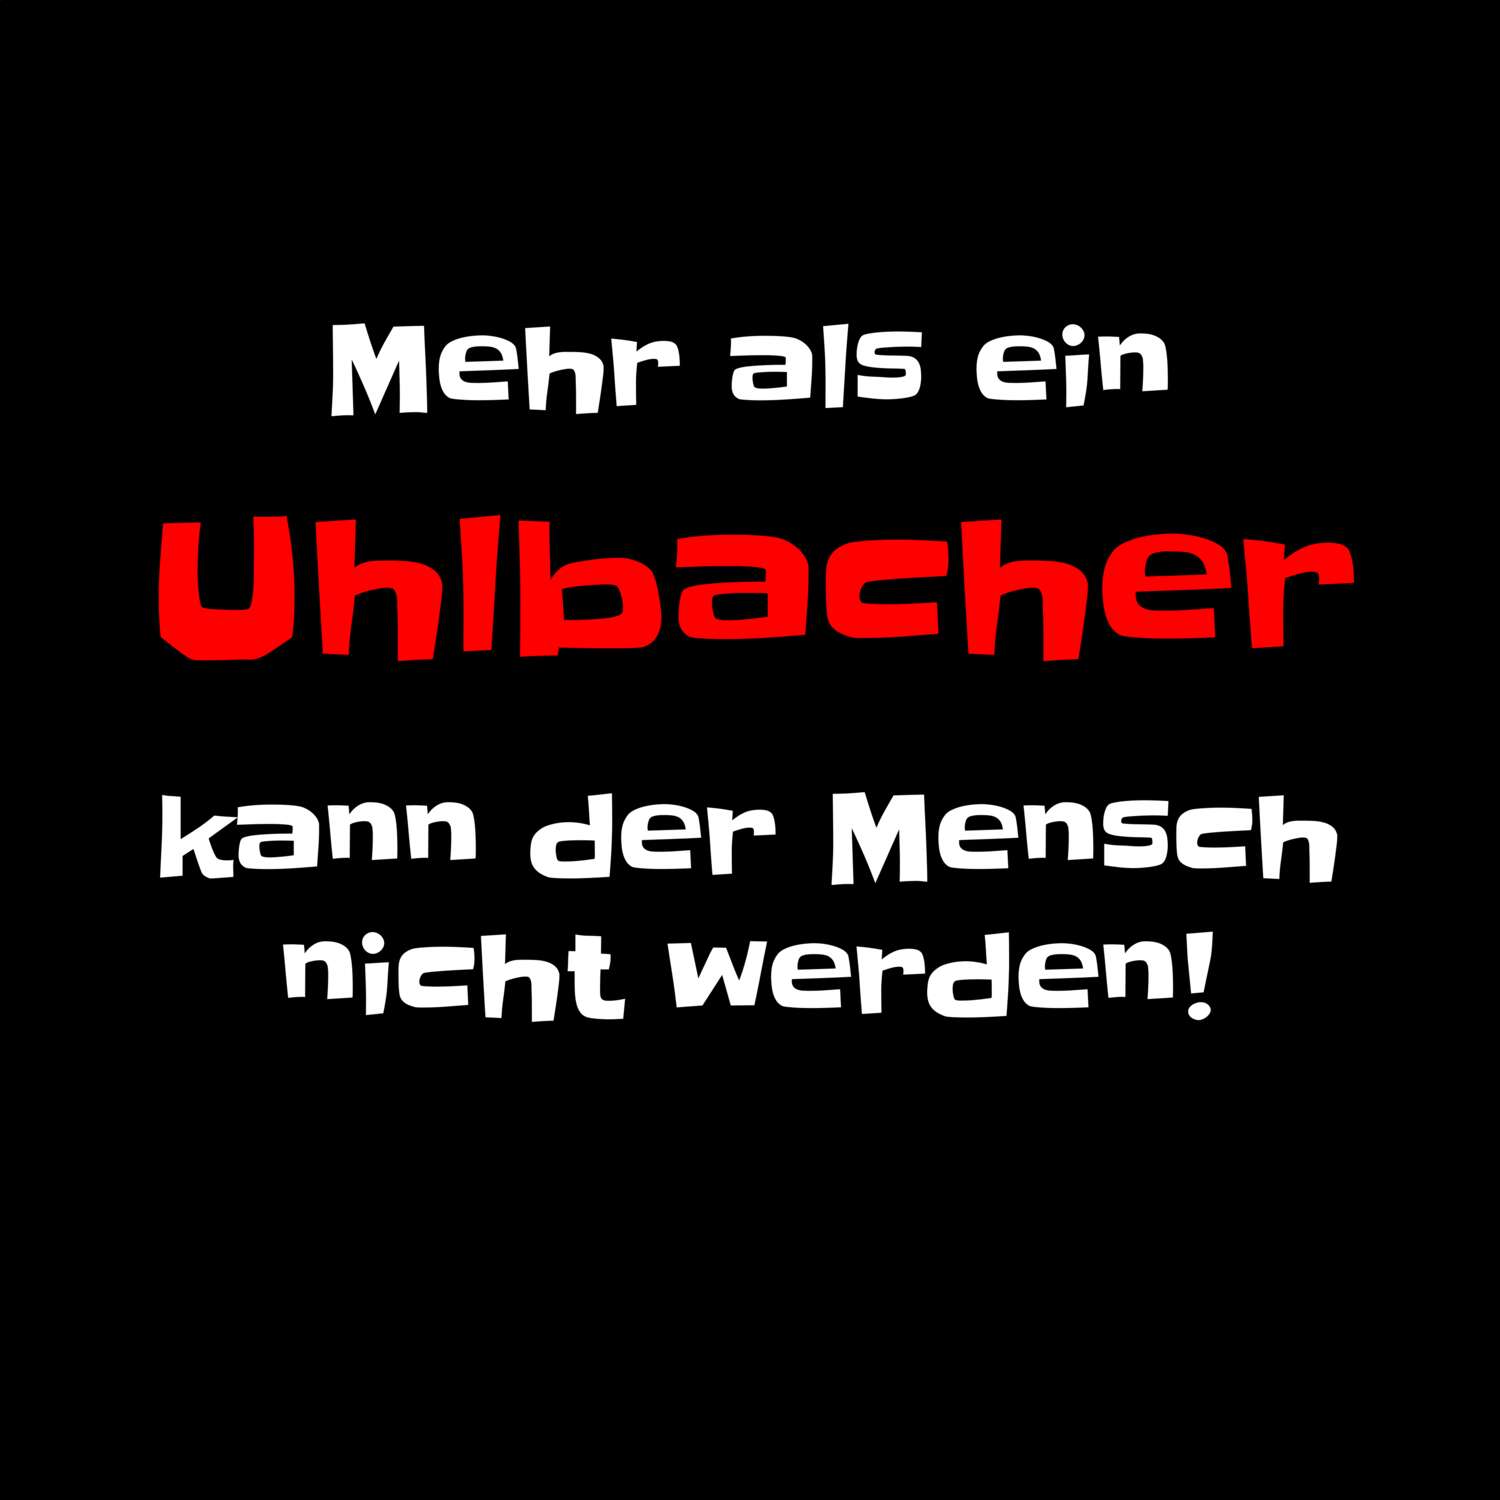 Uhlbach T-Shirt »Mehr als ein«